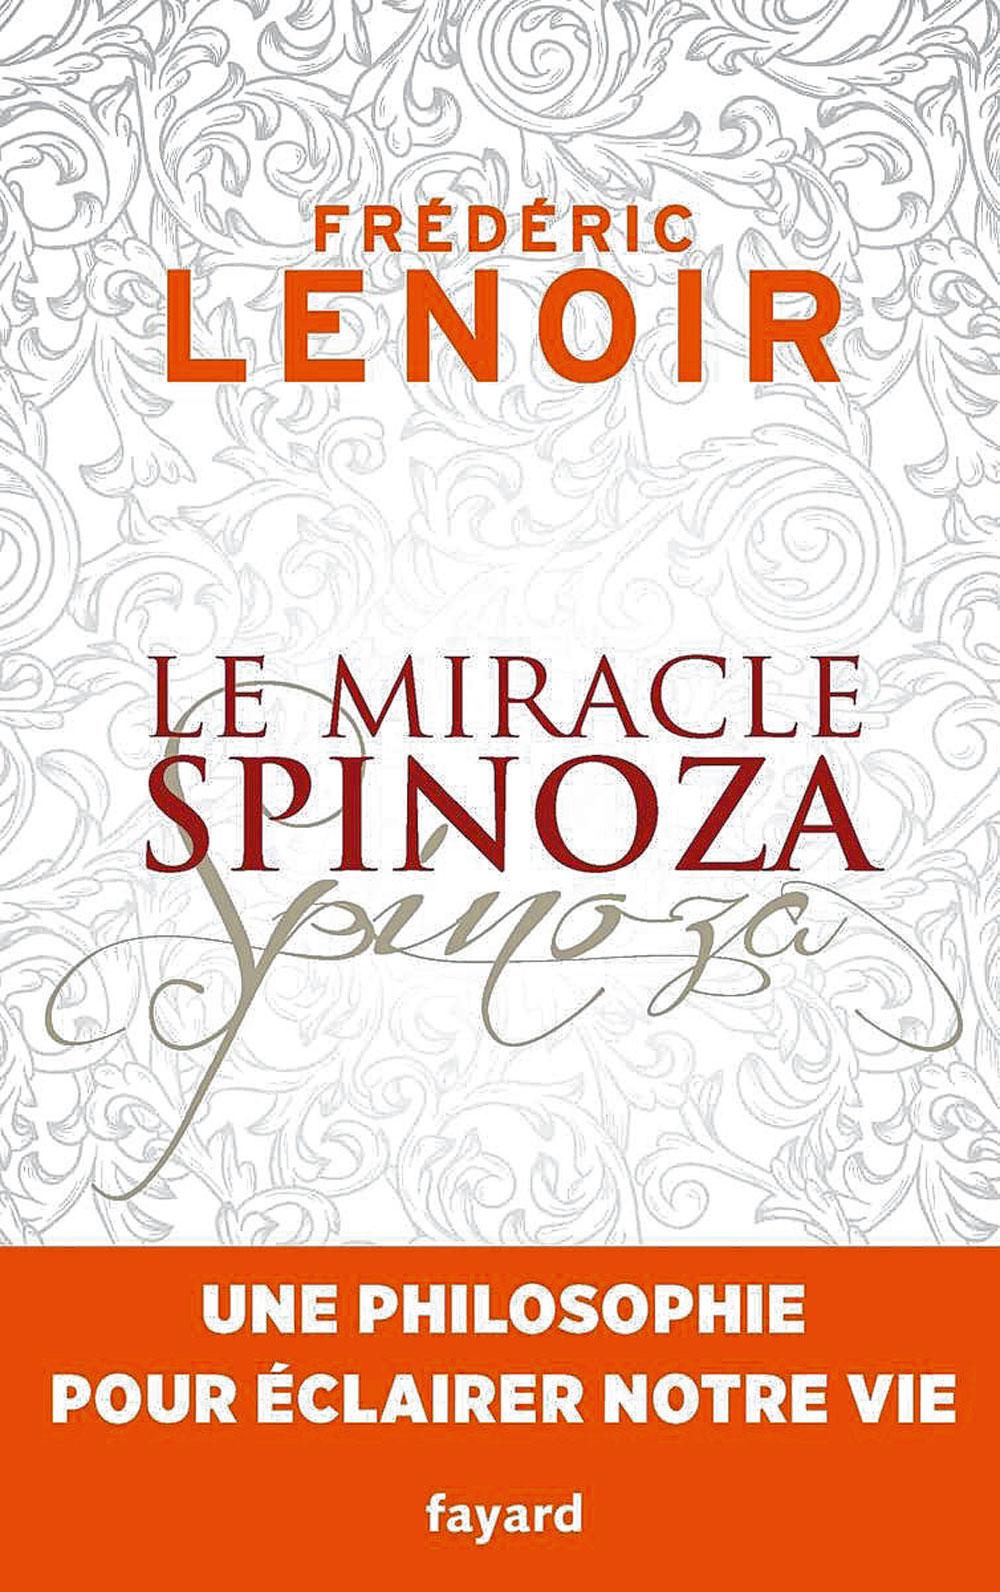 Le miracle Spinoza. Une philosophie pour éclairer notre vie, par Frédéric Lenoir, Fayard, 230 p.